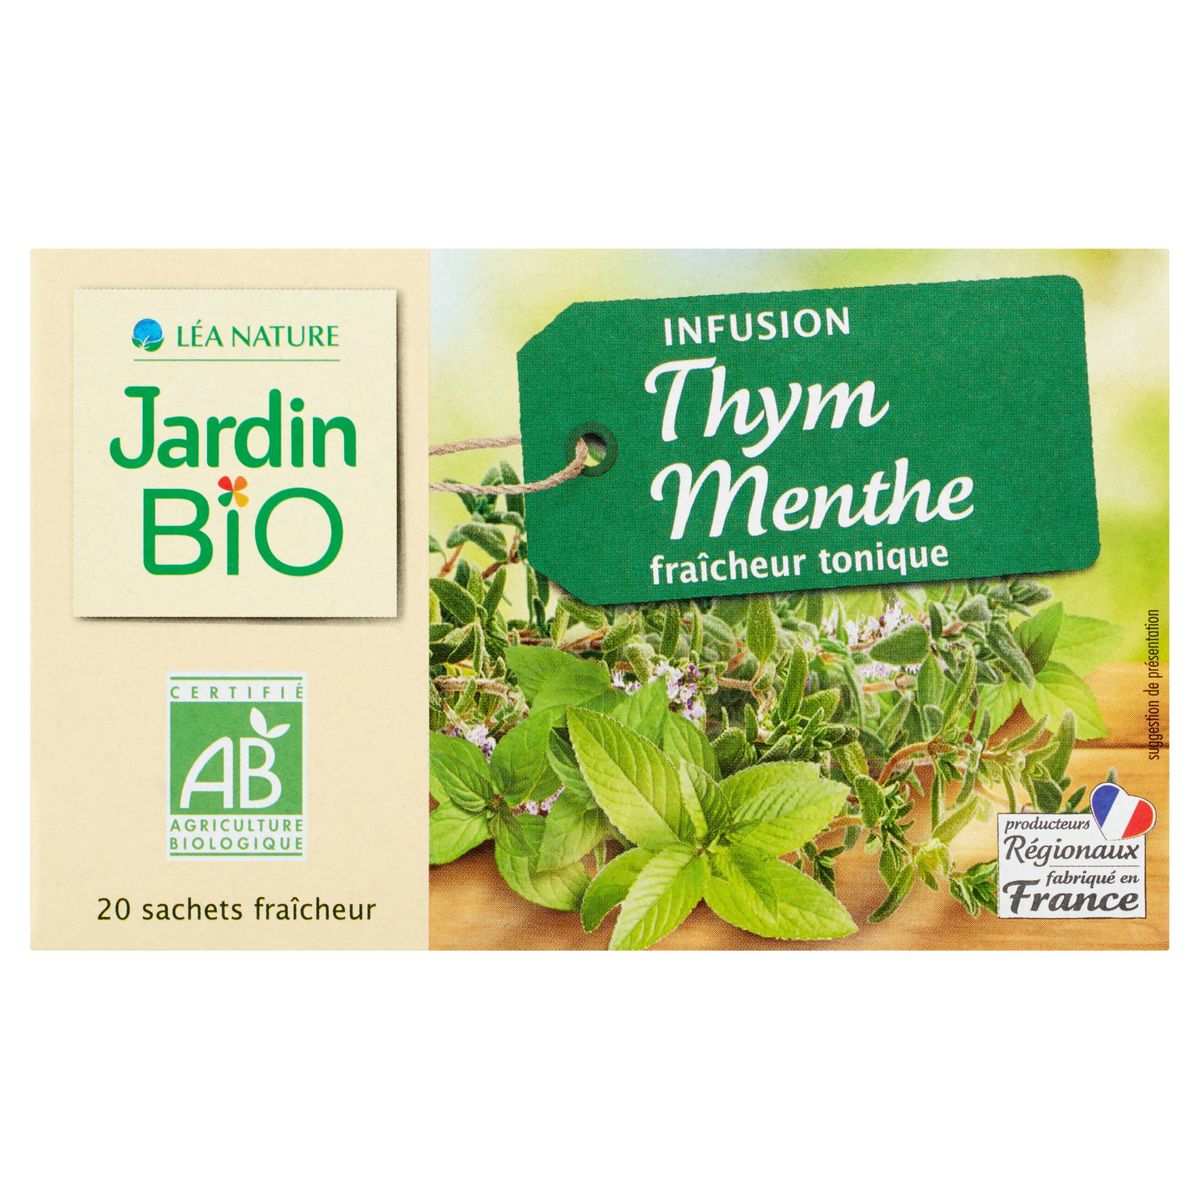 Jardin BiO ētic Infusion Thym Menthe Fraîcheur Tonique 30 g